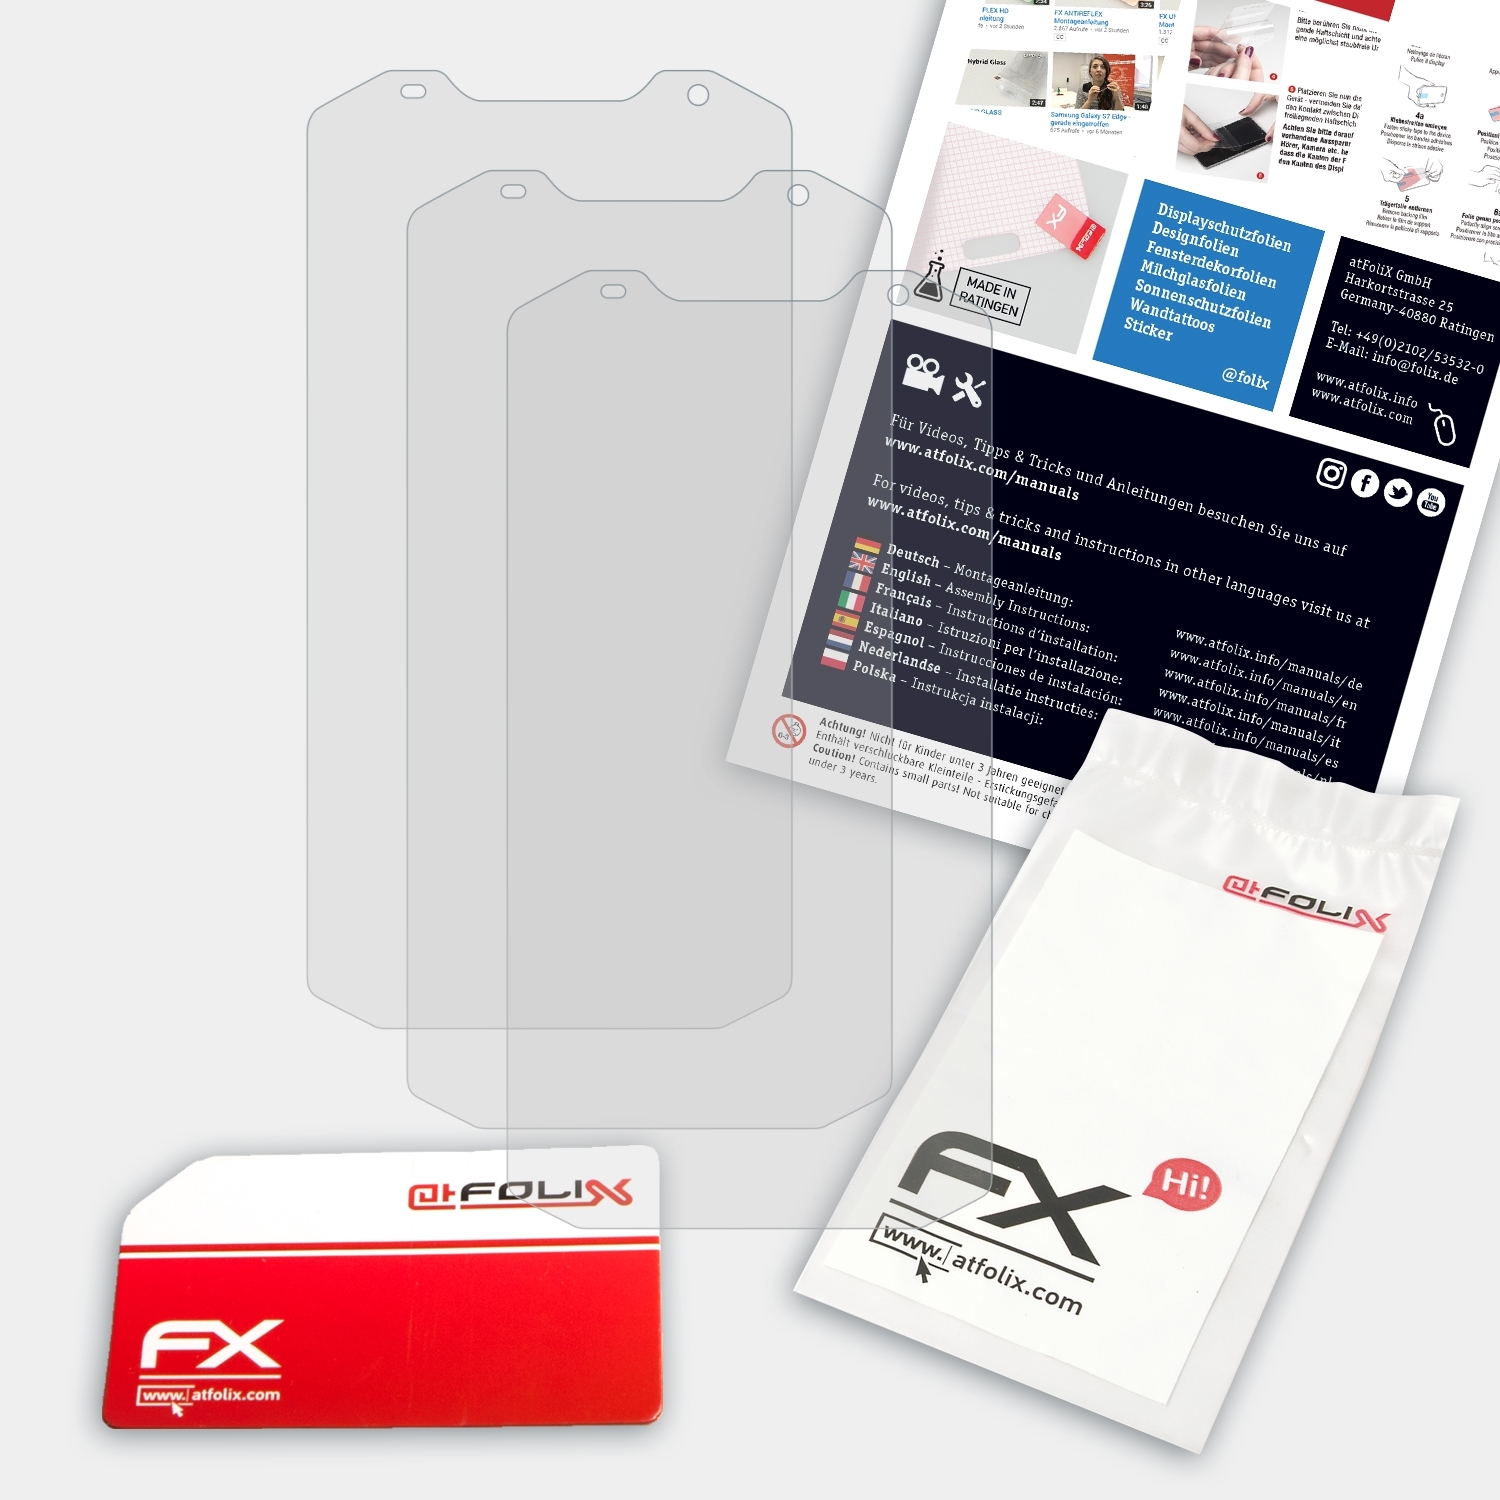 FX-Antireflex Displayschutz(für ATFOLIX MFOX A10) 3x